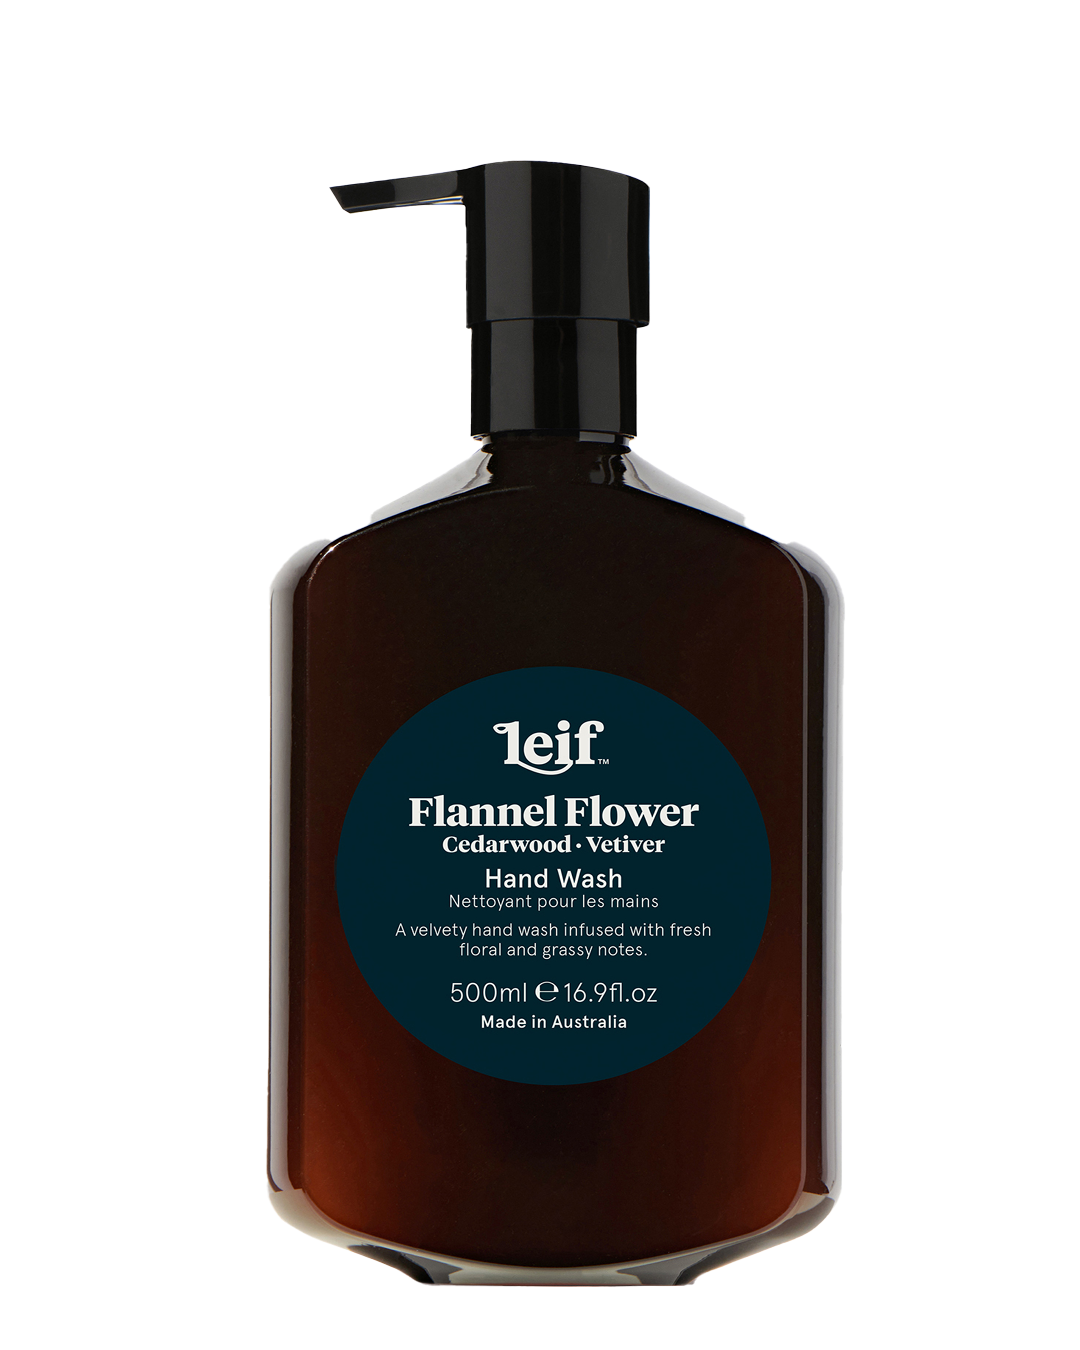 Flannel Flower Hand Wash